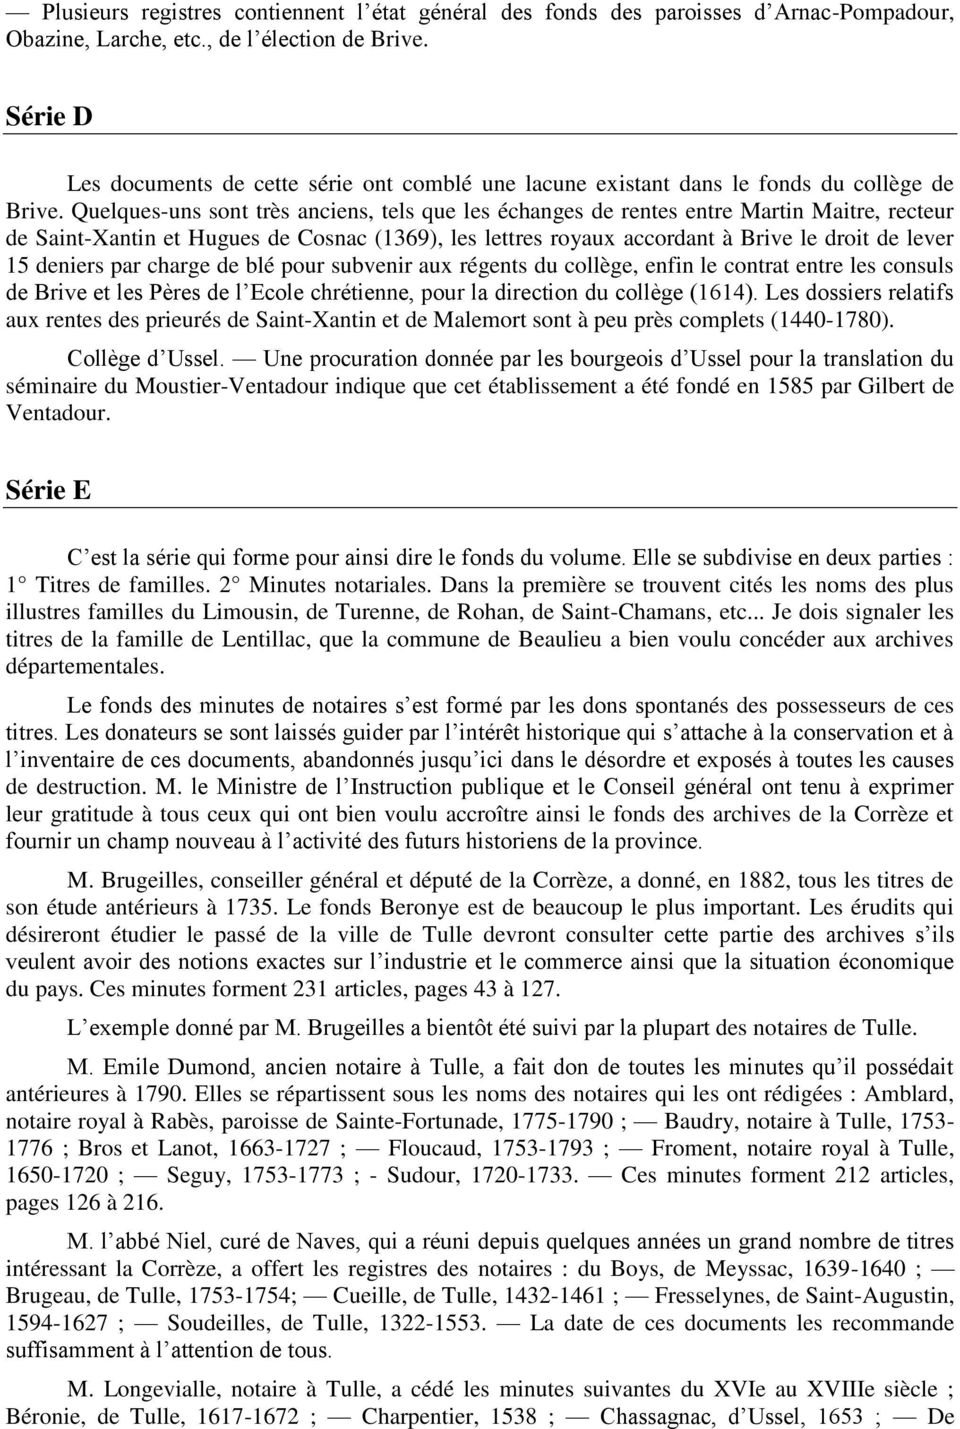 Quelques-uns sont très anciens, tels que les échanges de rentes entre Martin Maitre, recteur de Saint-Xantin et Hugues de Cosnac (1369), les lettres royaux accordant à Brive le droit de lever 15